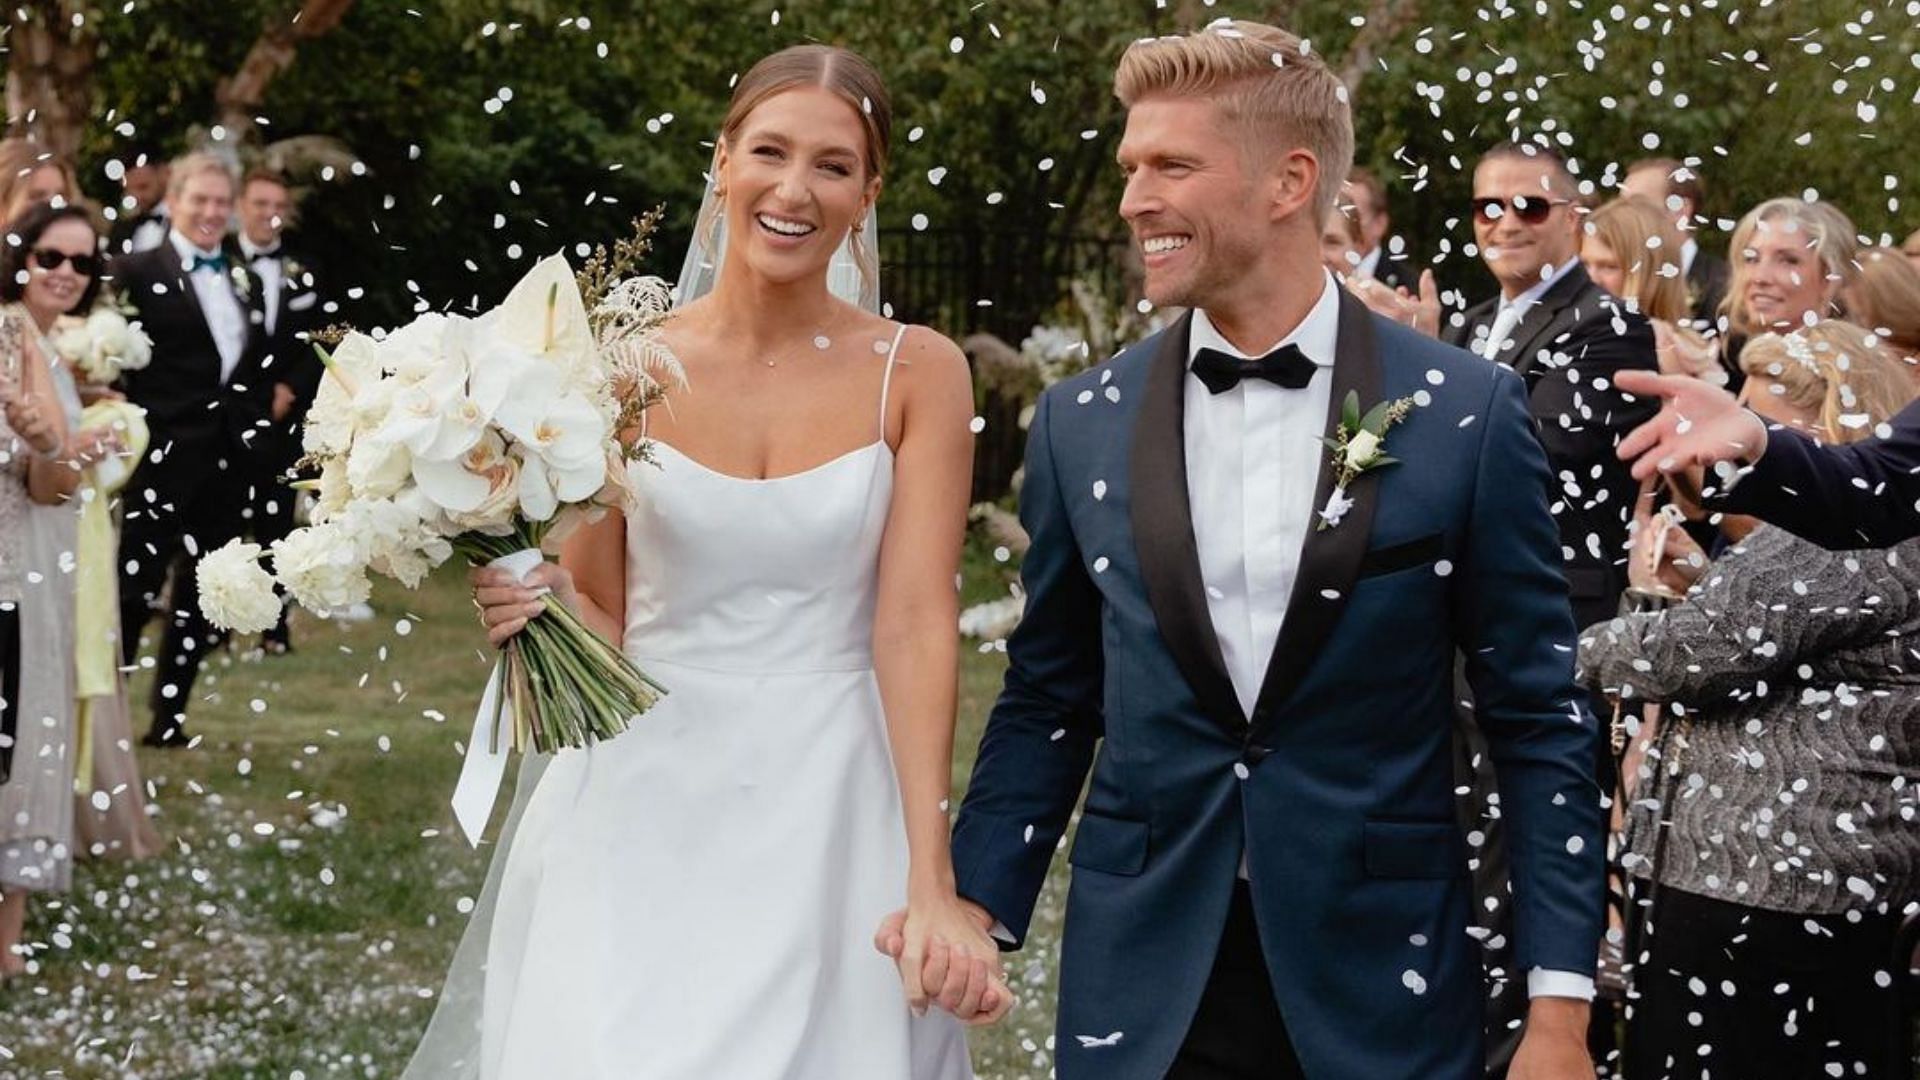 Amanda Batula and Kyle Cooke got married in the Summer House Season 6 finale (Image via amandabatula/Instagram)